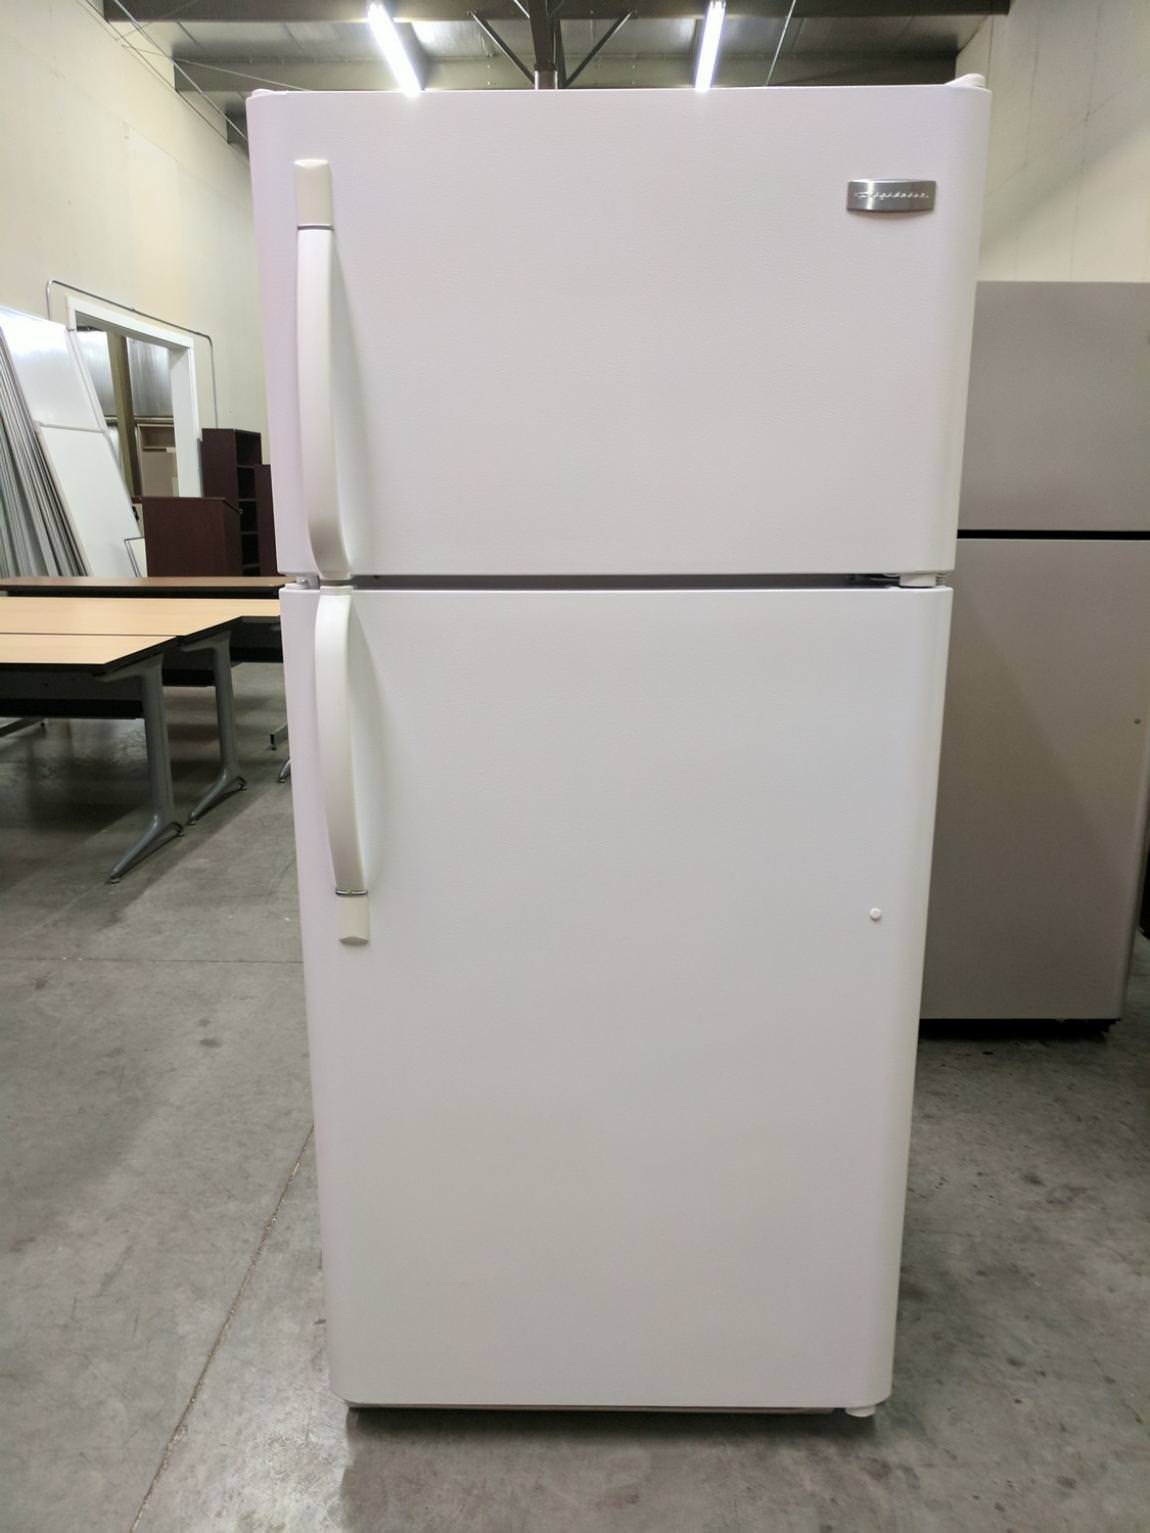 White Frigidaire Refrigerator - Refrigerator